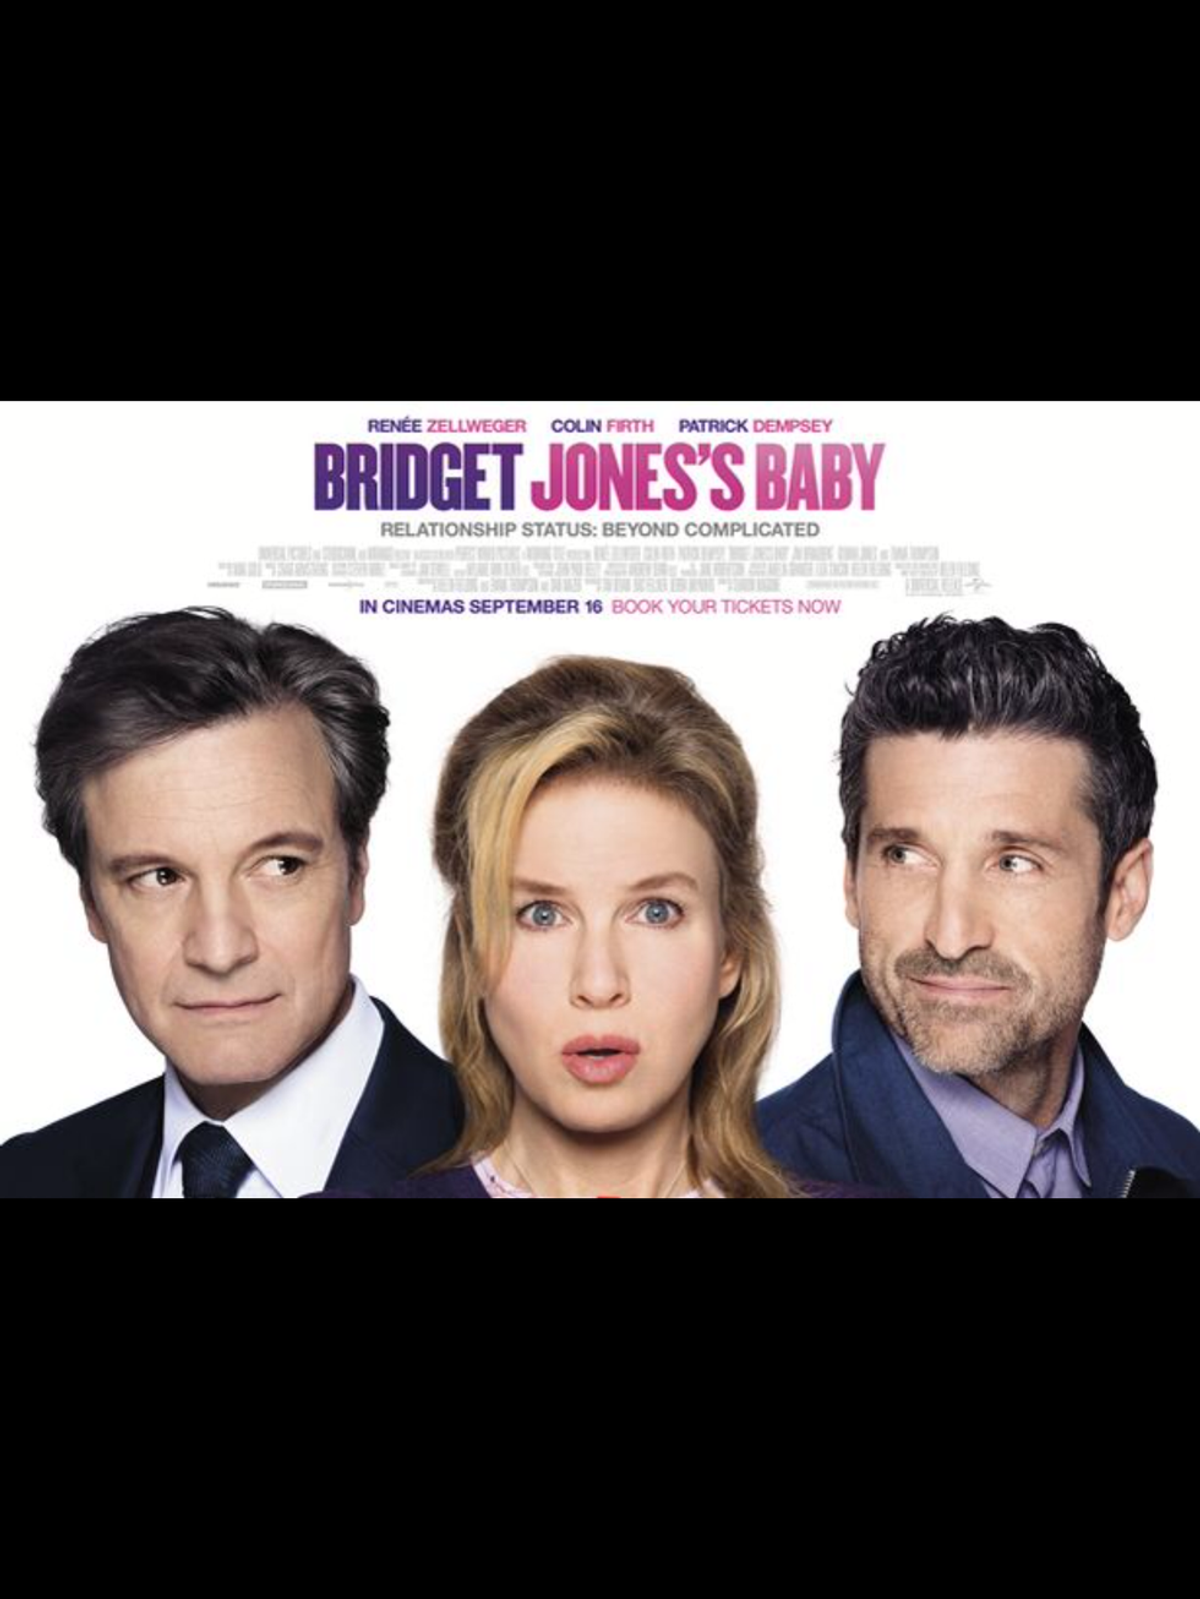 Bridget Jones's Baby: A Review